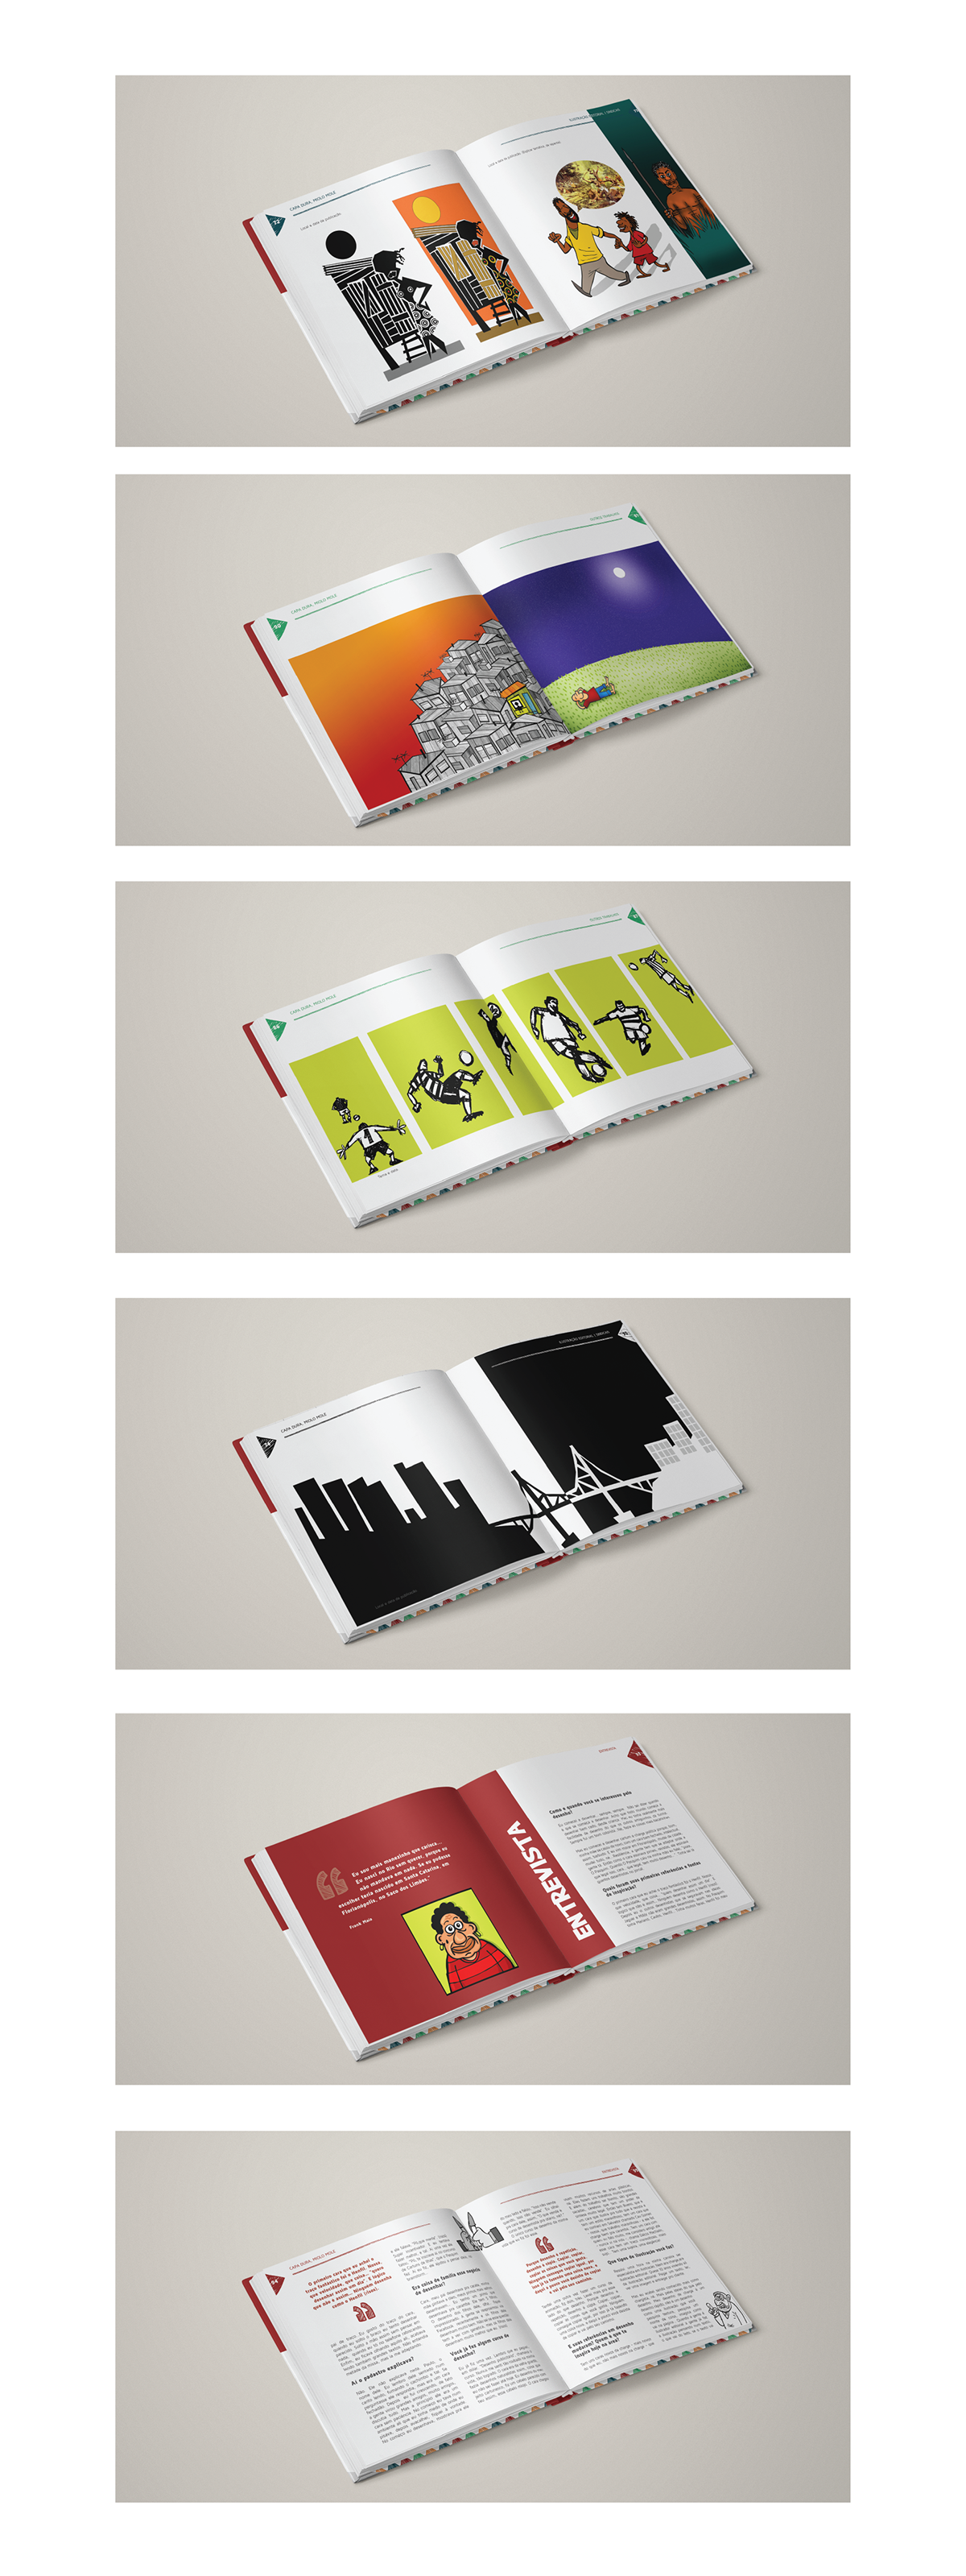 Livro editorial Ilustração frankmaia designdelivro DesignEditorial